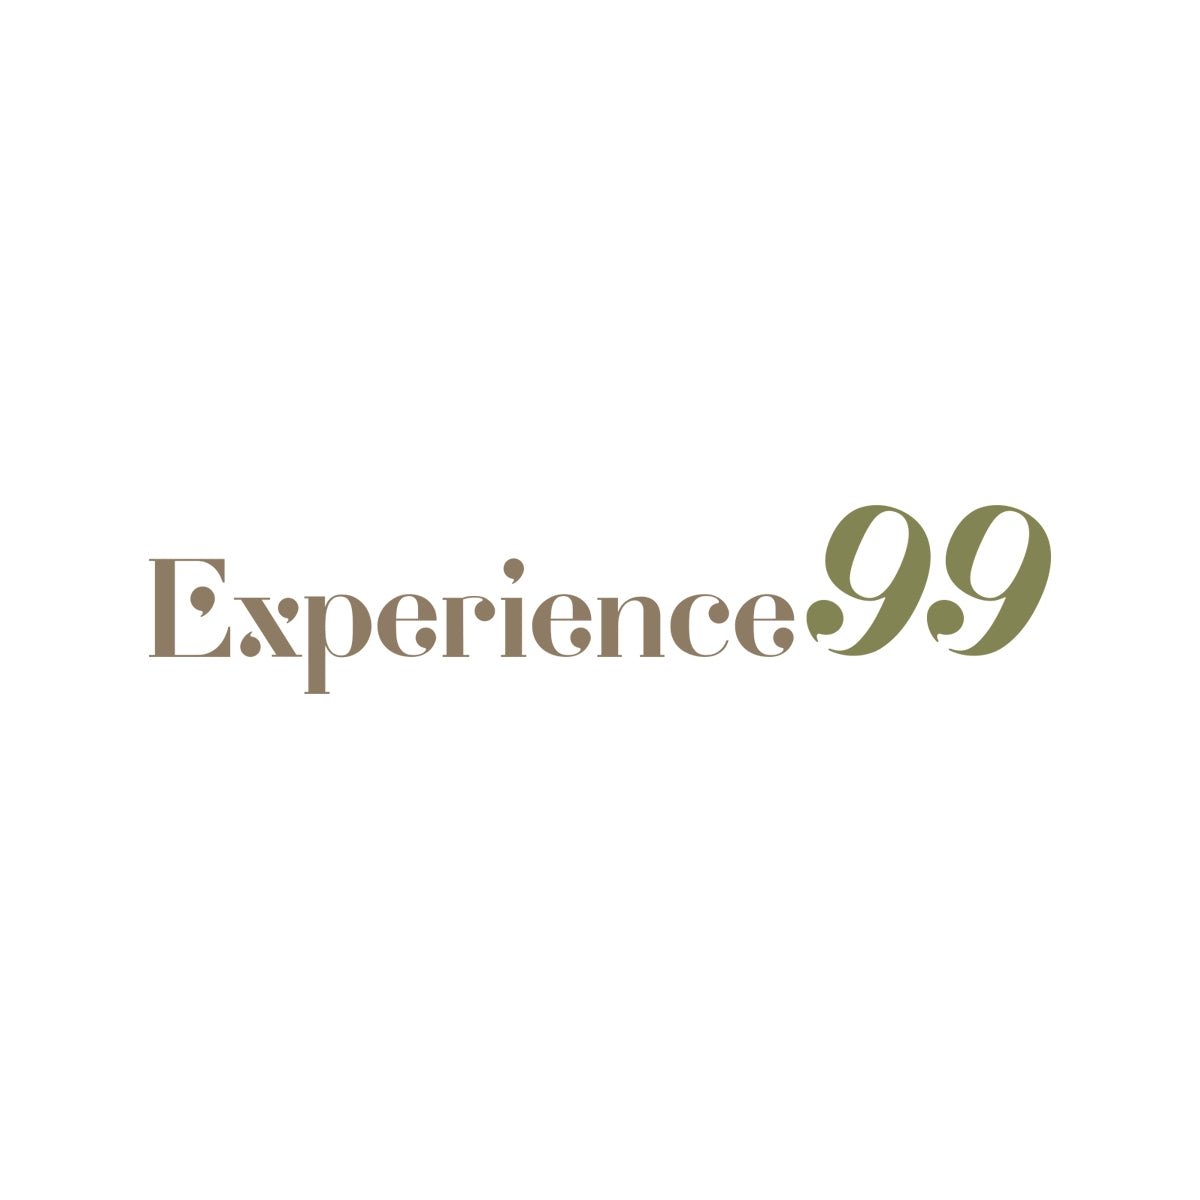 experience99.com